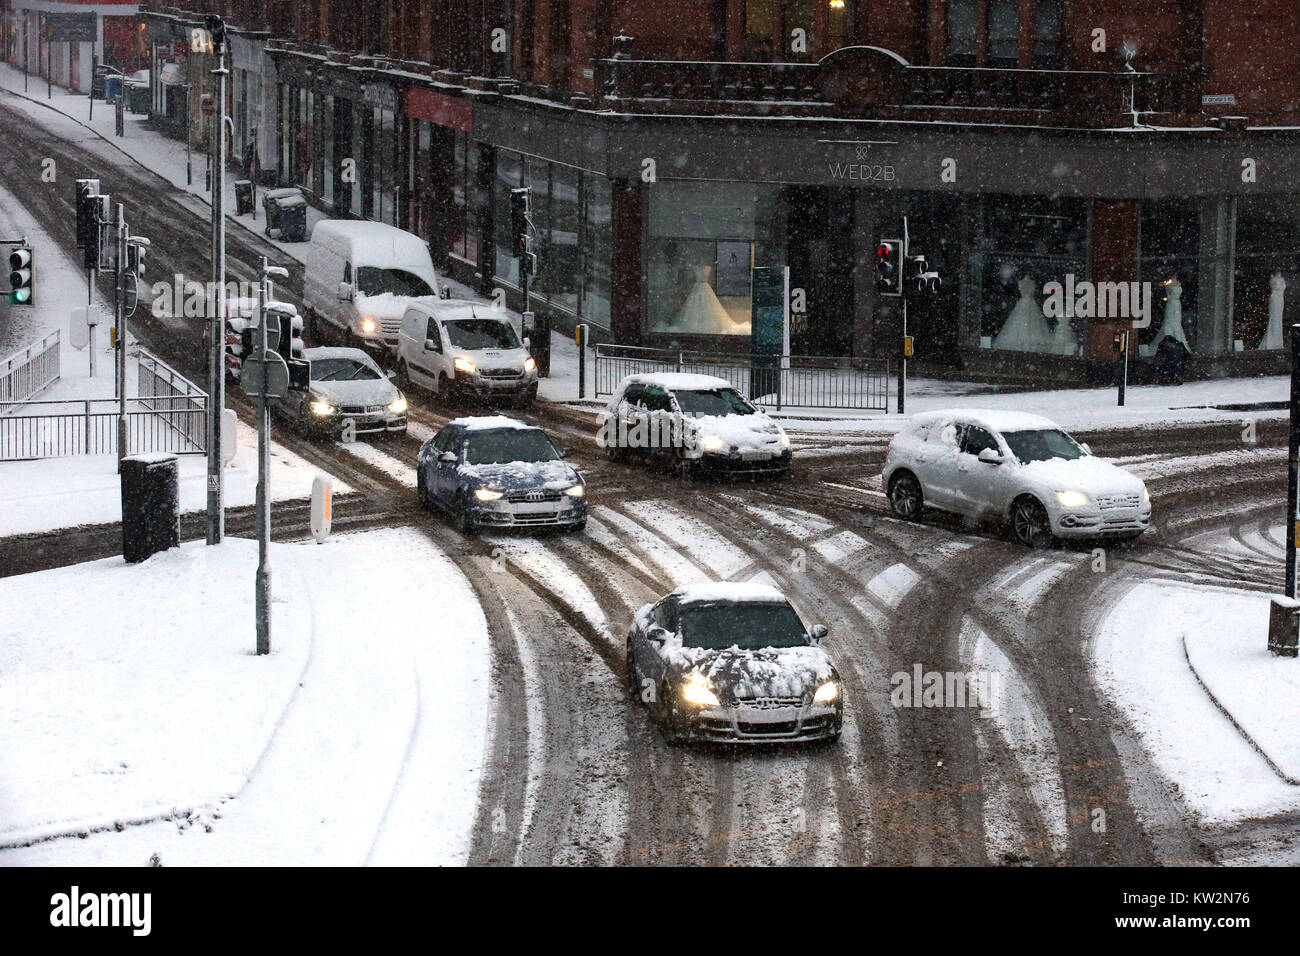 Voitures couvertes de neige dans la région de Charing Cross, Glasgow, après la Grande-Bretagne a vu l'une des nuits les plus froides de l'année avec des températures à la baisse pour atteindre moins 12.3C à Loch Glascarnoch dans les Highlands écossais. Banque D'Images